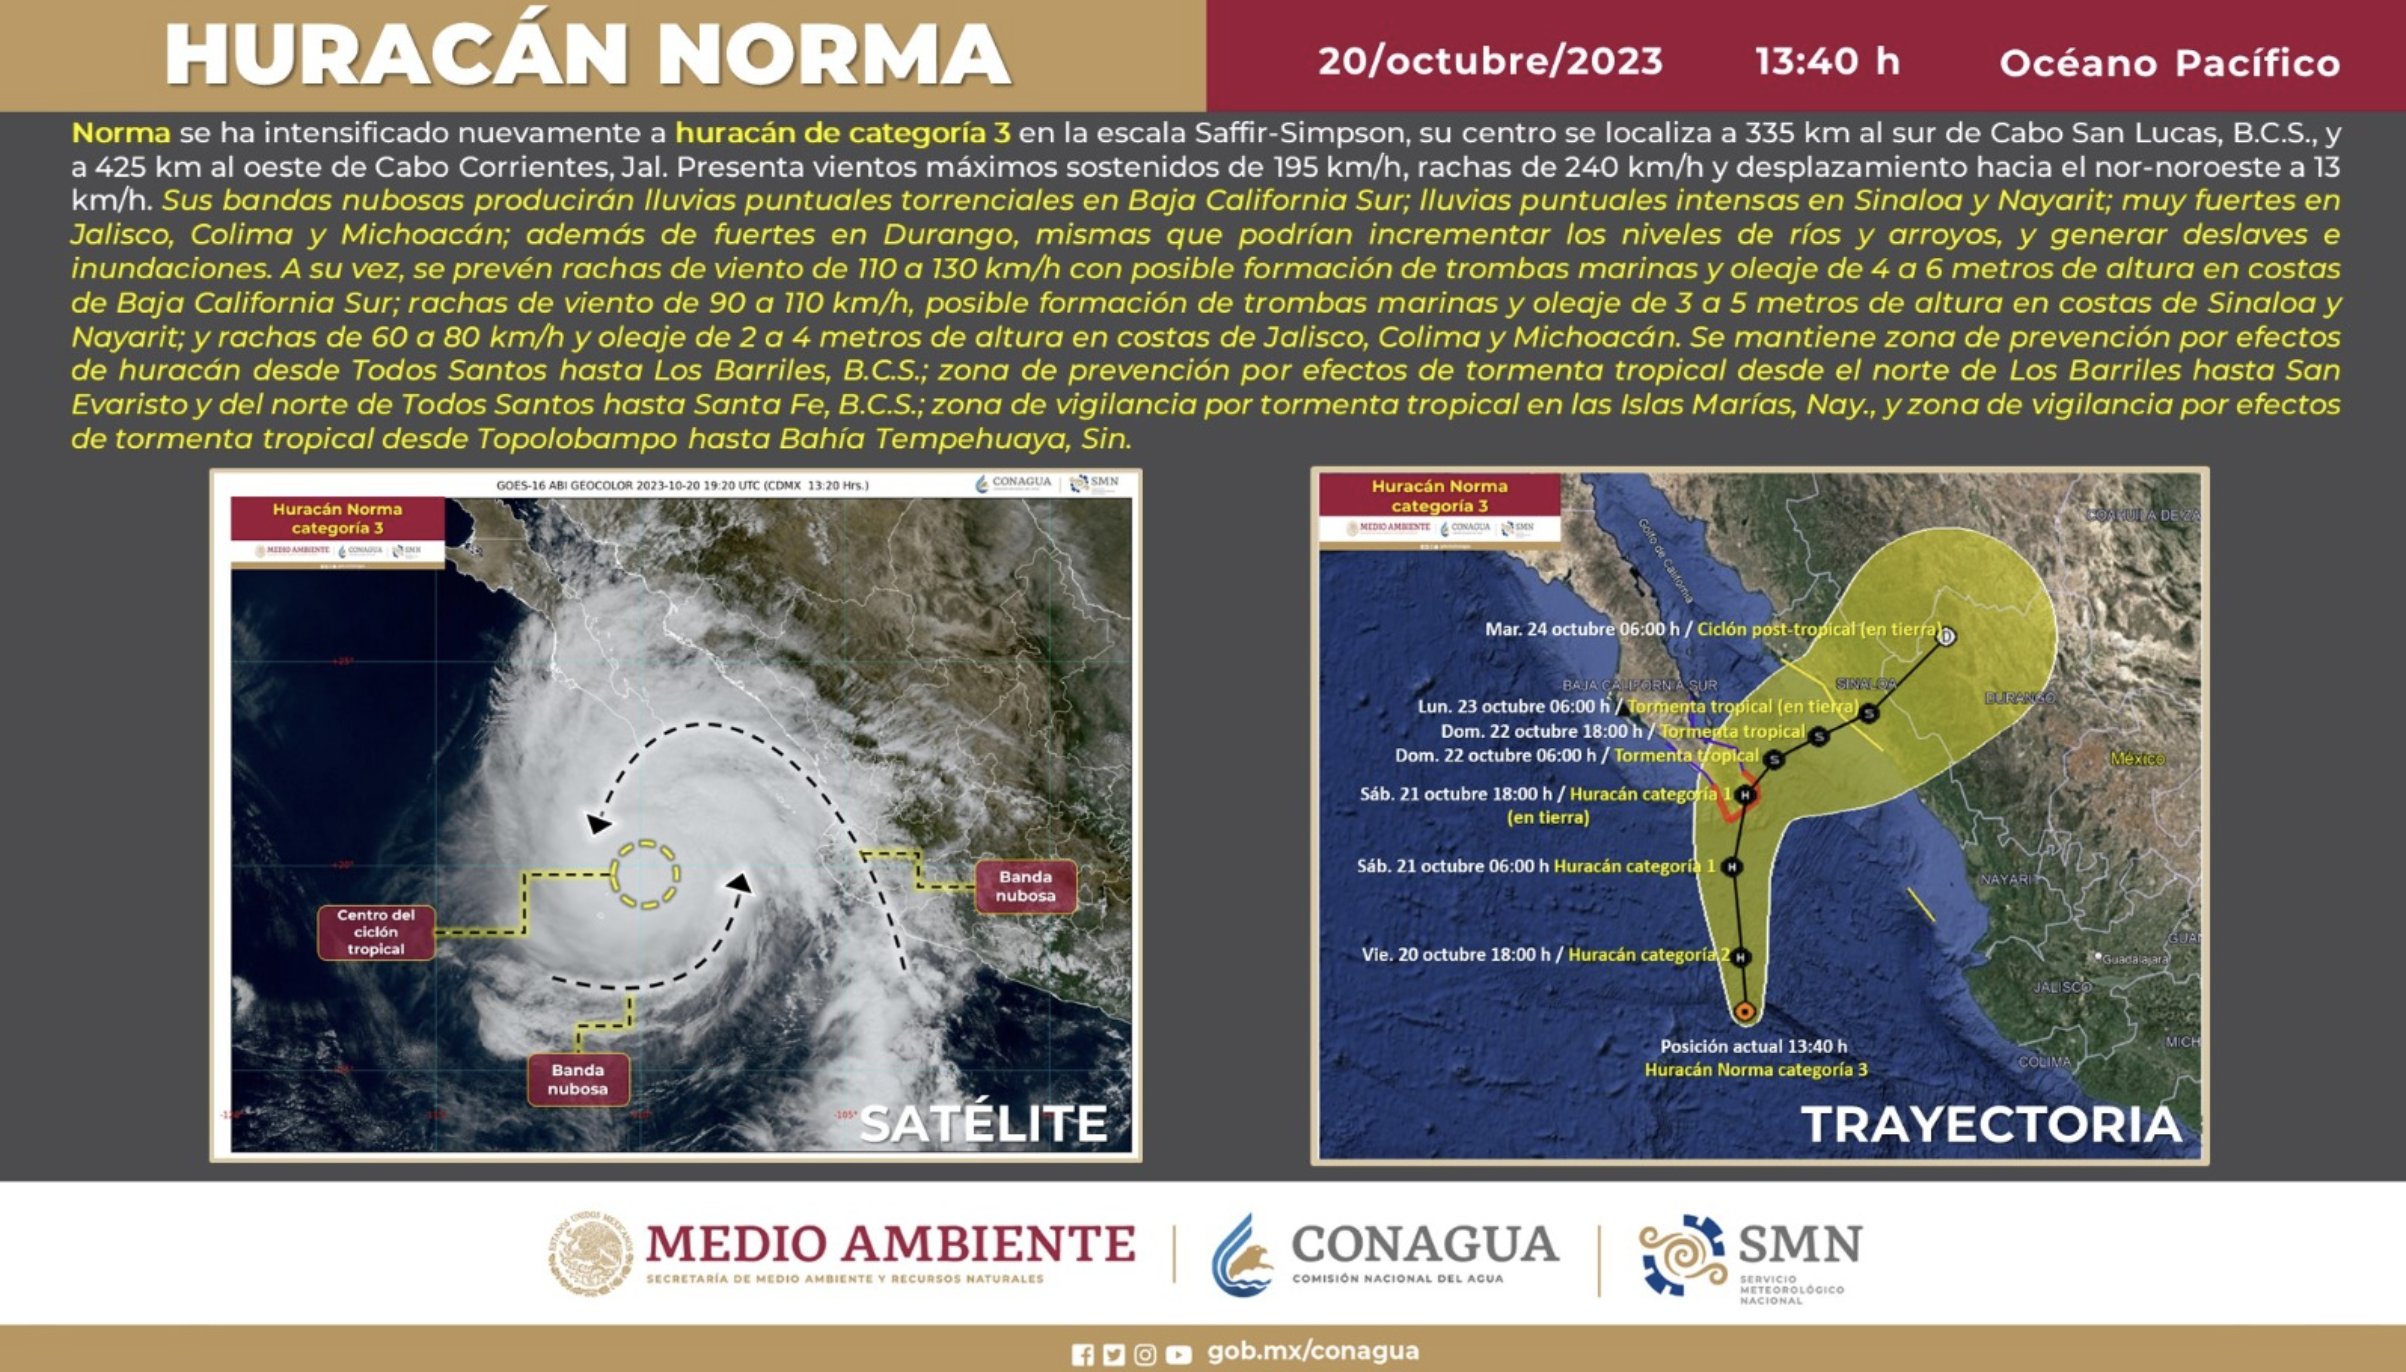 El huracán Norma ocasionará lluvias torrenciales e intensas en Baja California Sur, Nayarit y Sinaloa